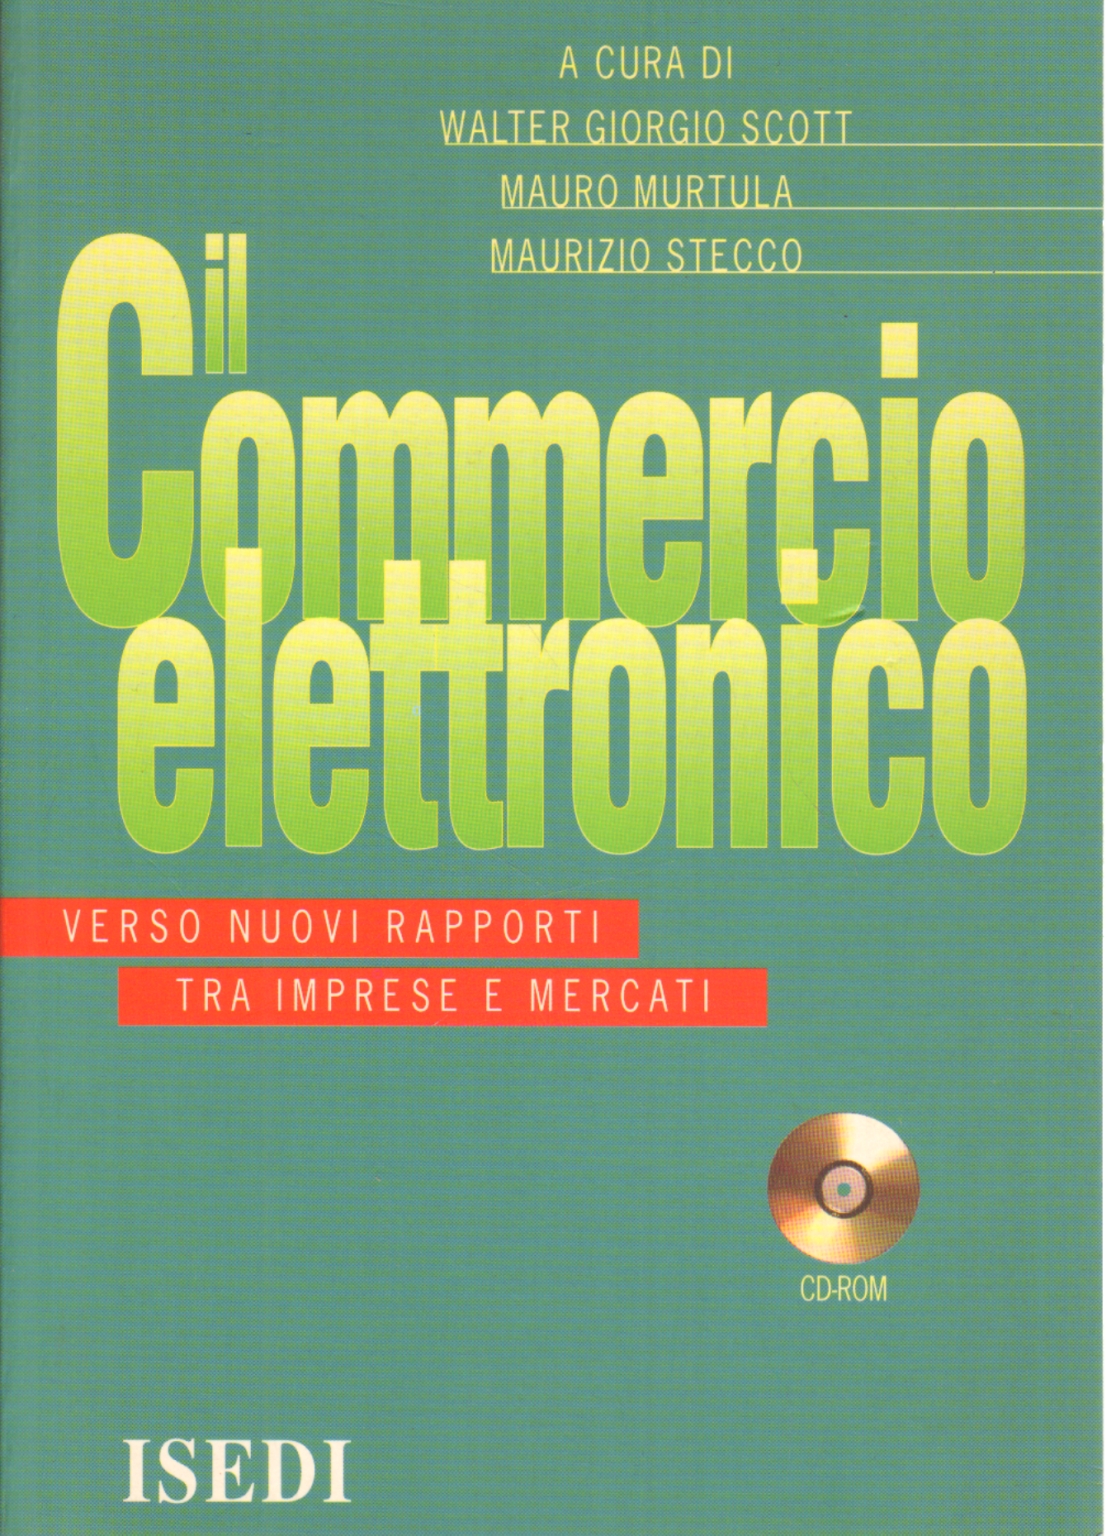 Le commerce électronique (CD-ROM), Walter Giorgio Scott Mauro Murtula Maurizio Stecco